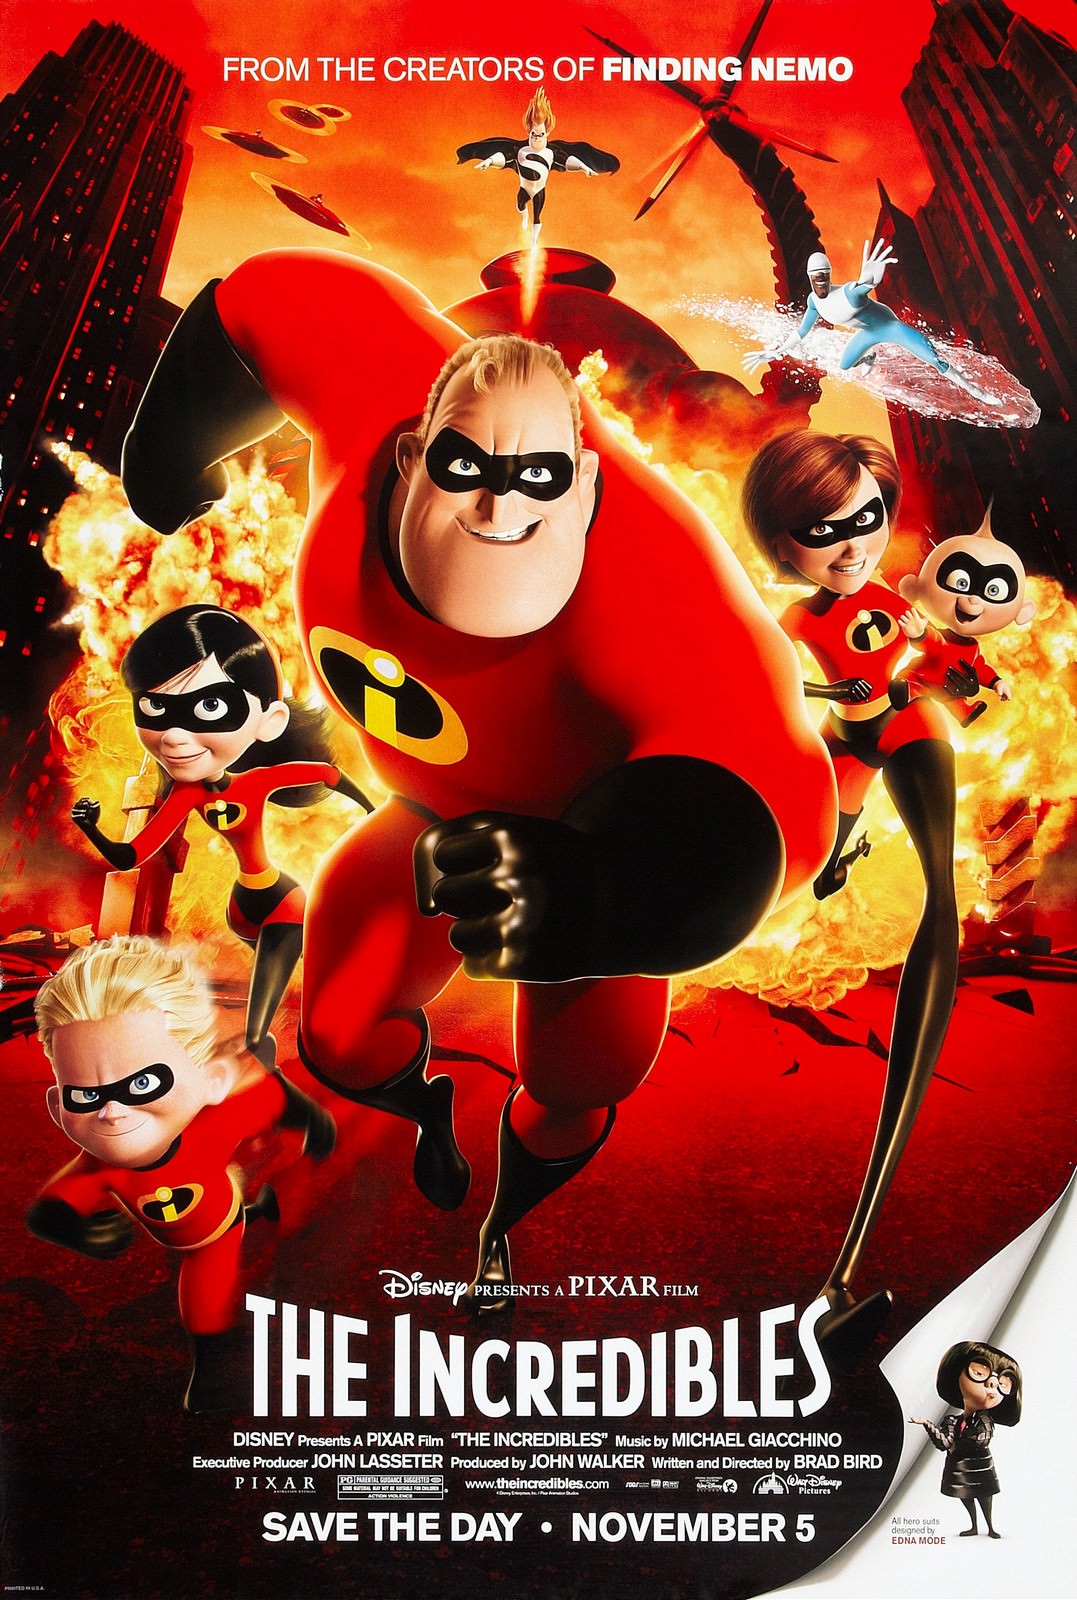 Movie, The Incredibles(美國, 2004) / 超人特攻隊(台) / 超人总动员(中) / 超人特工隊(港), 電影海報, 美國